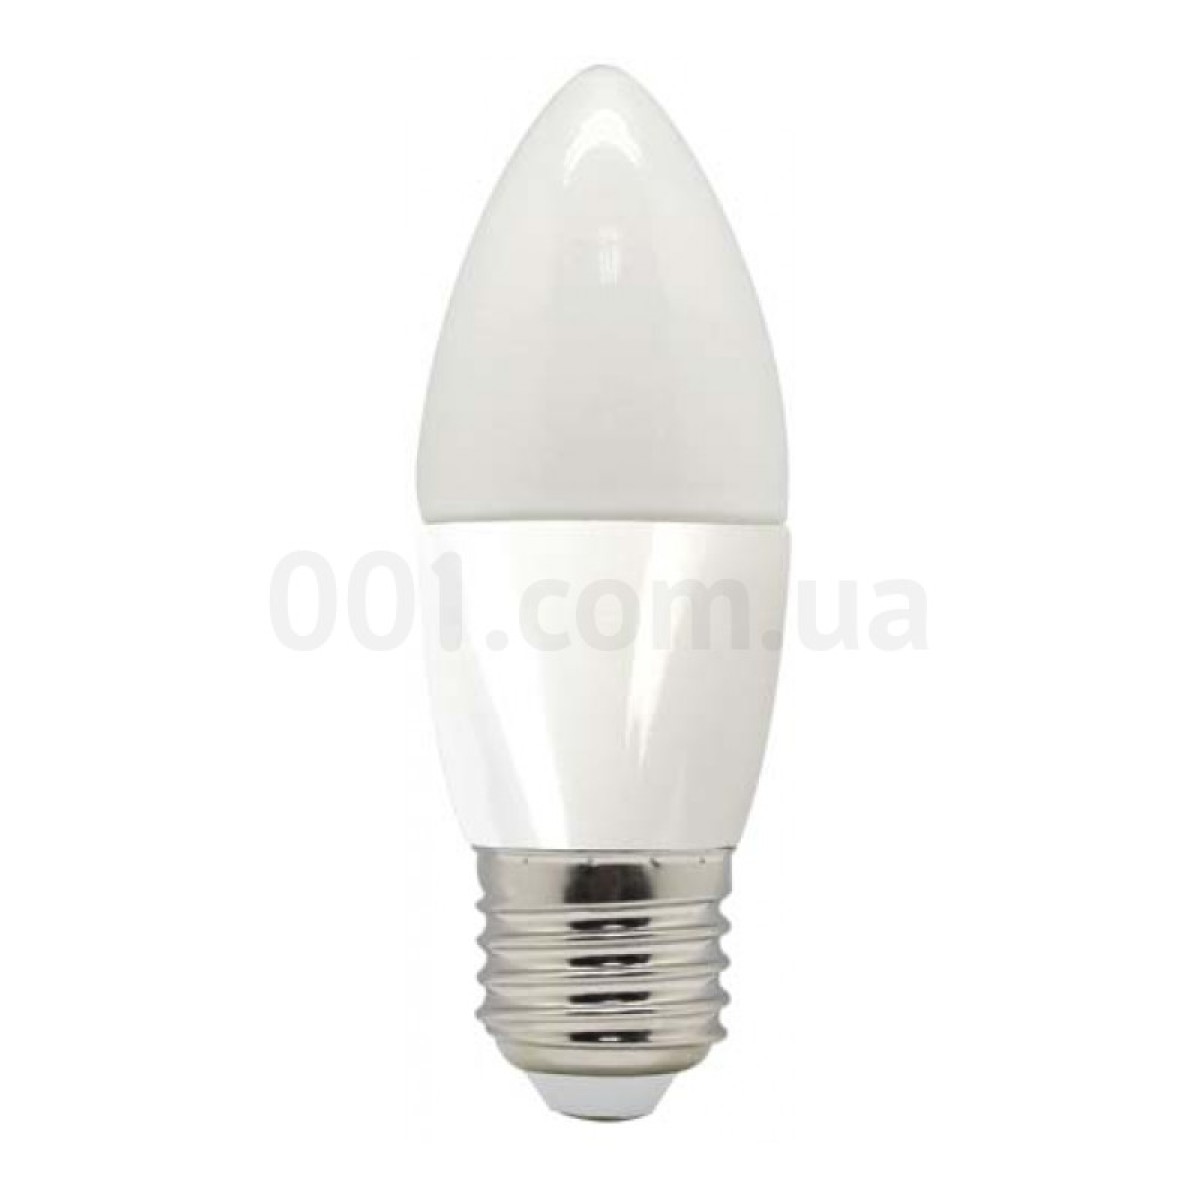 Світлодіодна лампа LB-97 C37 (свічка) 5Вт 2700K E27, Feron 256_256.jpg